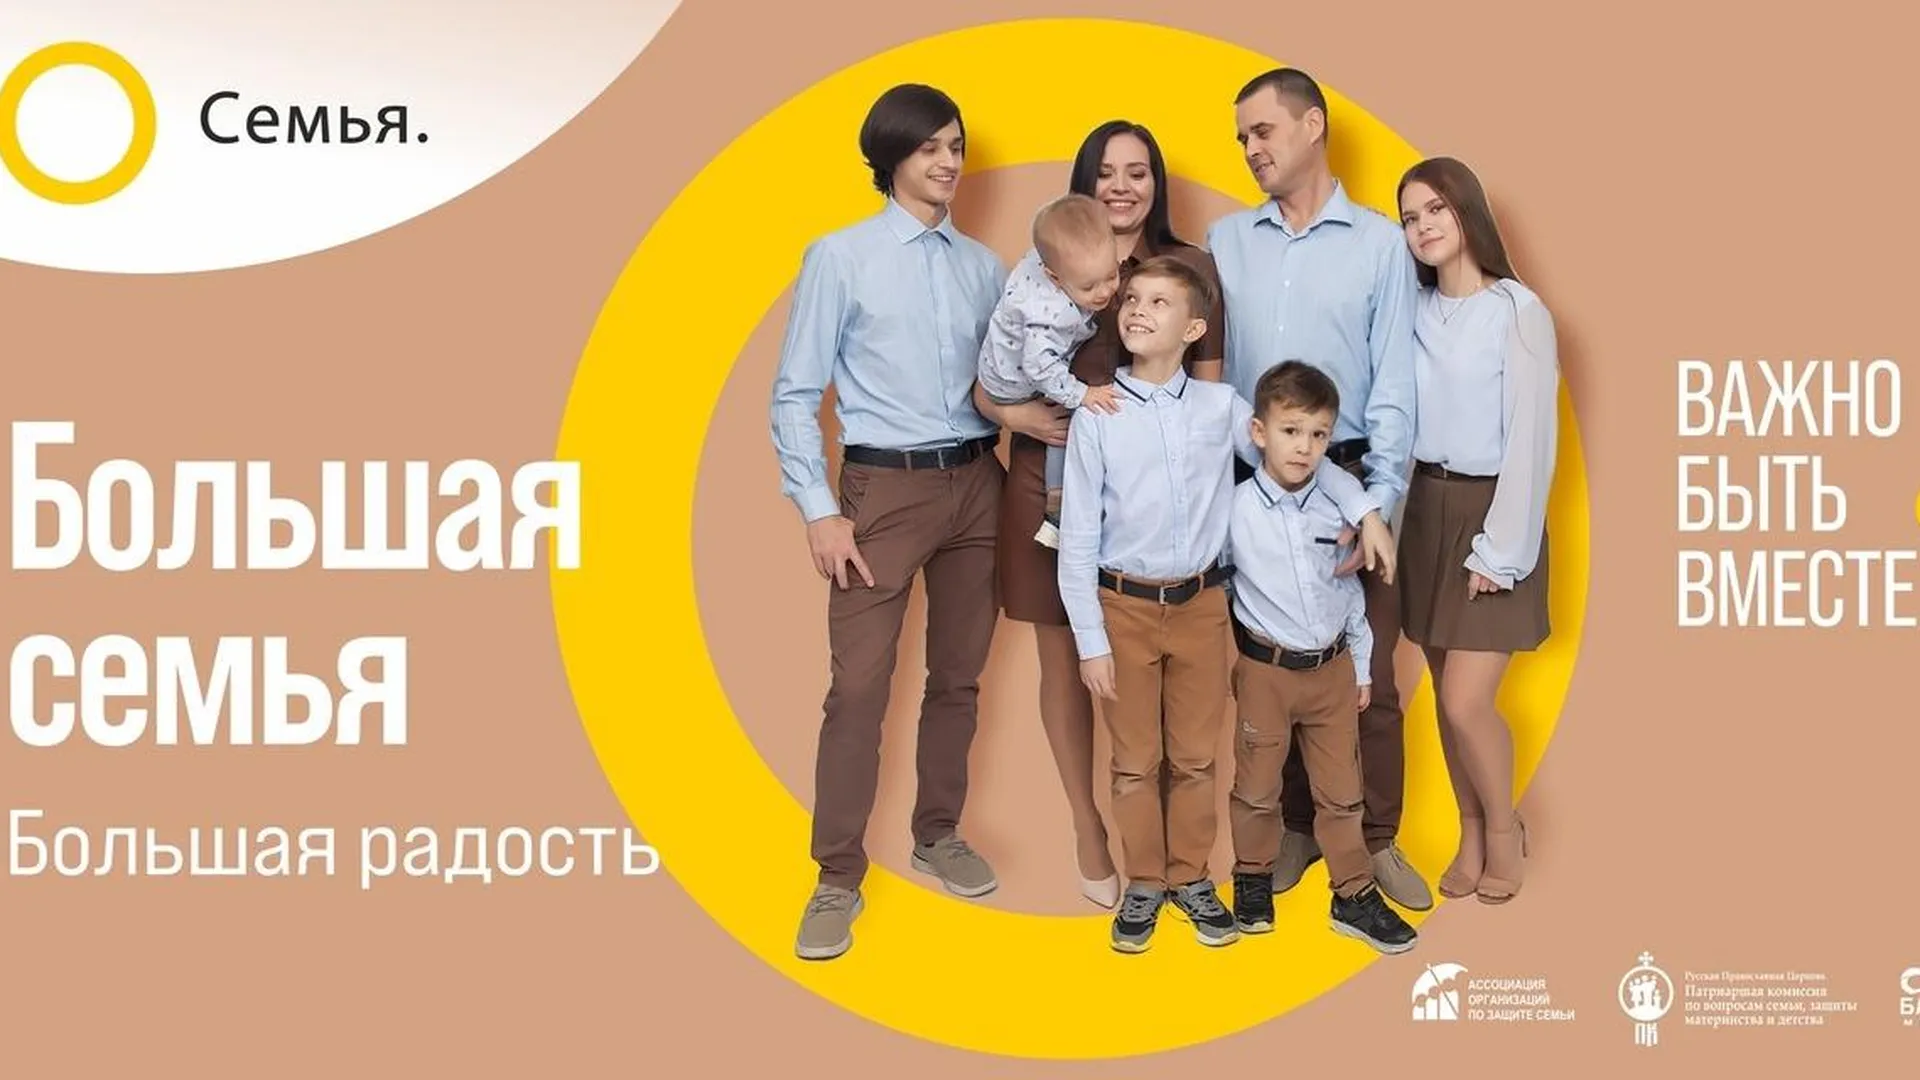 Страница в "ВКонтакте" Ассоциации организаций по защите семьи